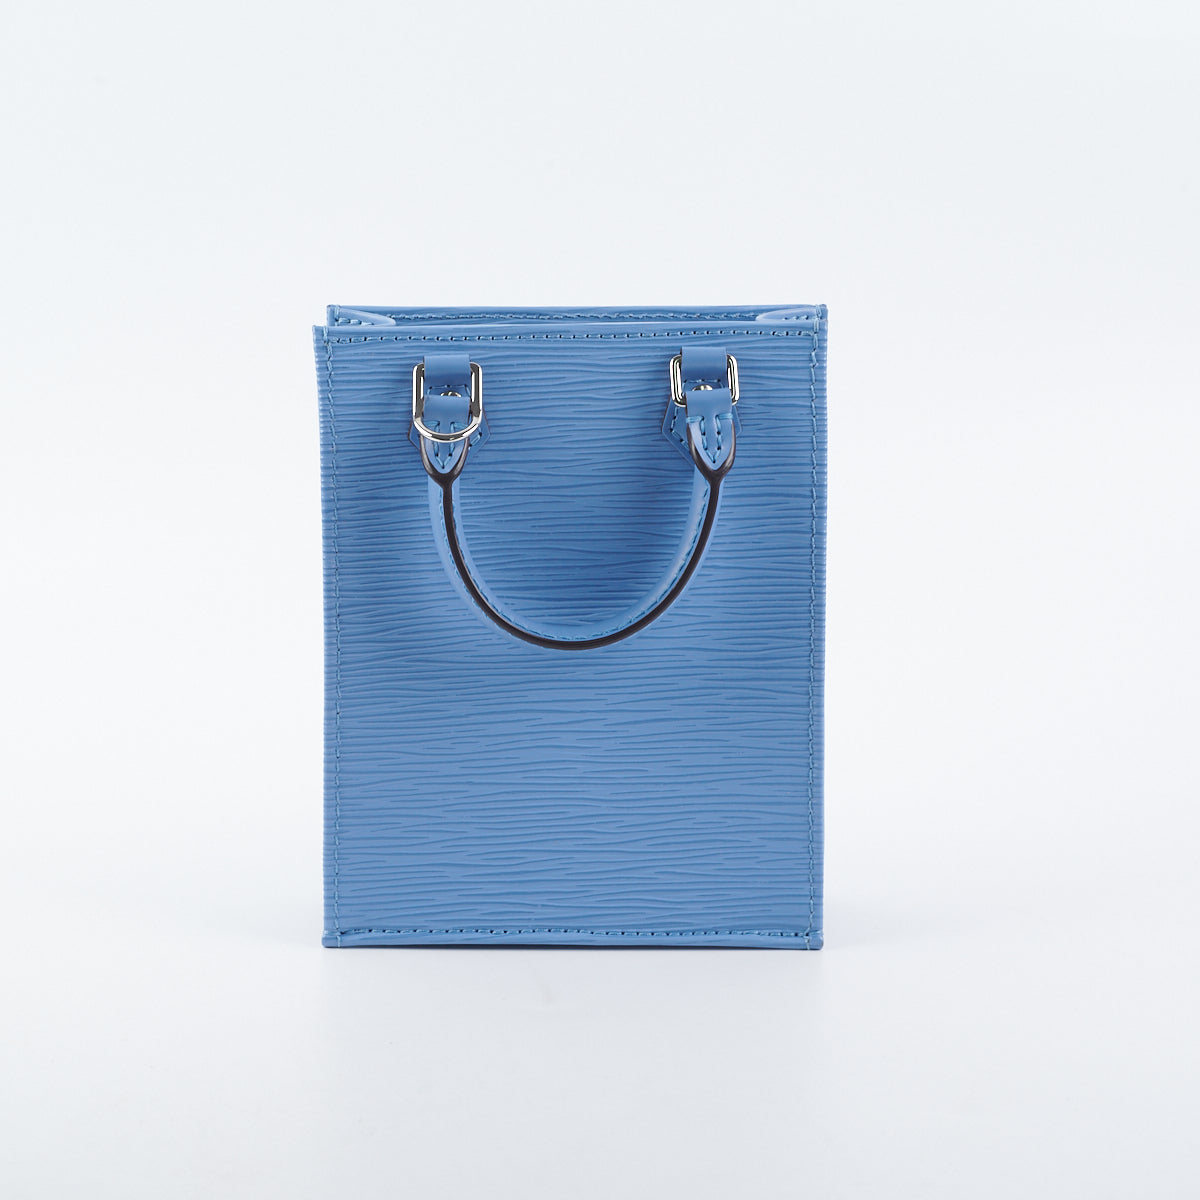 Louis Vuitton Epi Petit Sac Plat Bleuet Blue - THE PURSE AFFAIR